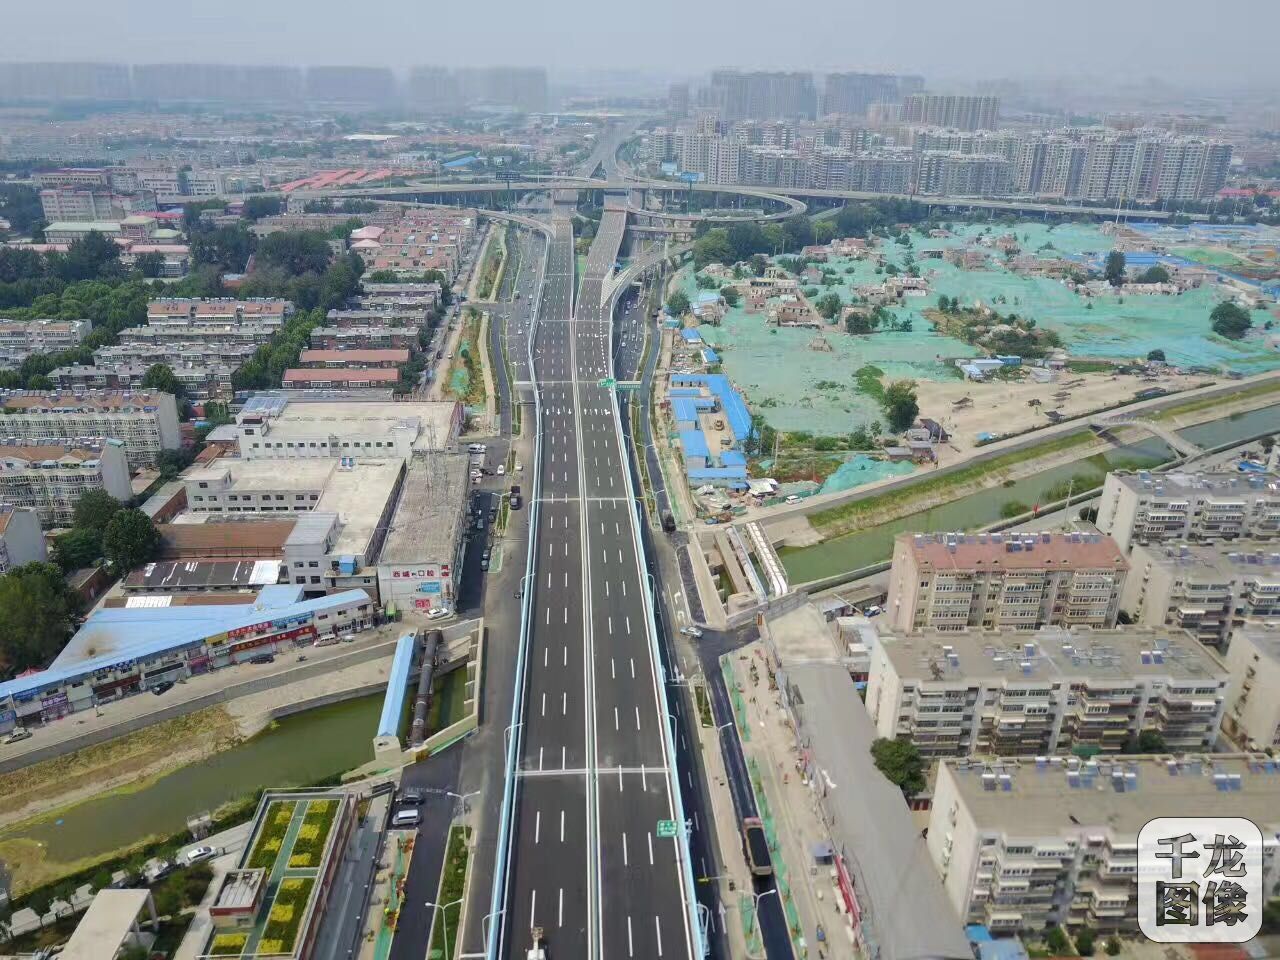 由北京城建道桥建设集团施工的济广高速济南连接线一期工程，，经15个月的紧张施工将在6月30日正式通车。济广高速济南连接线PPP项目工程总造价11.248亿元，长8.5公里。